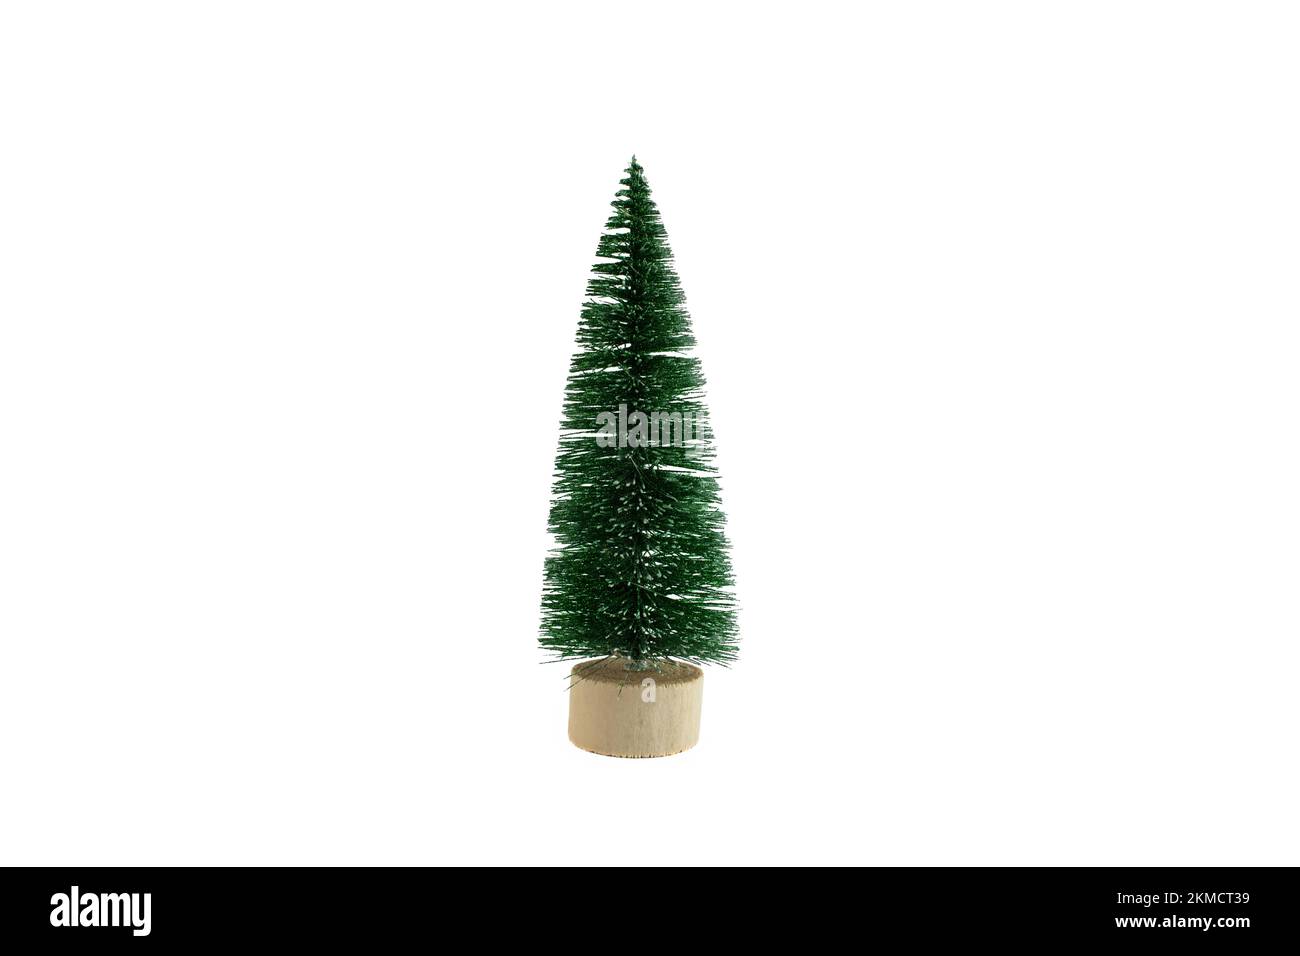 Decorative fir tree pot Banque d'images détourées - Alamy